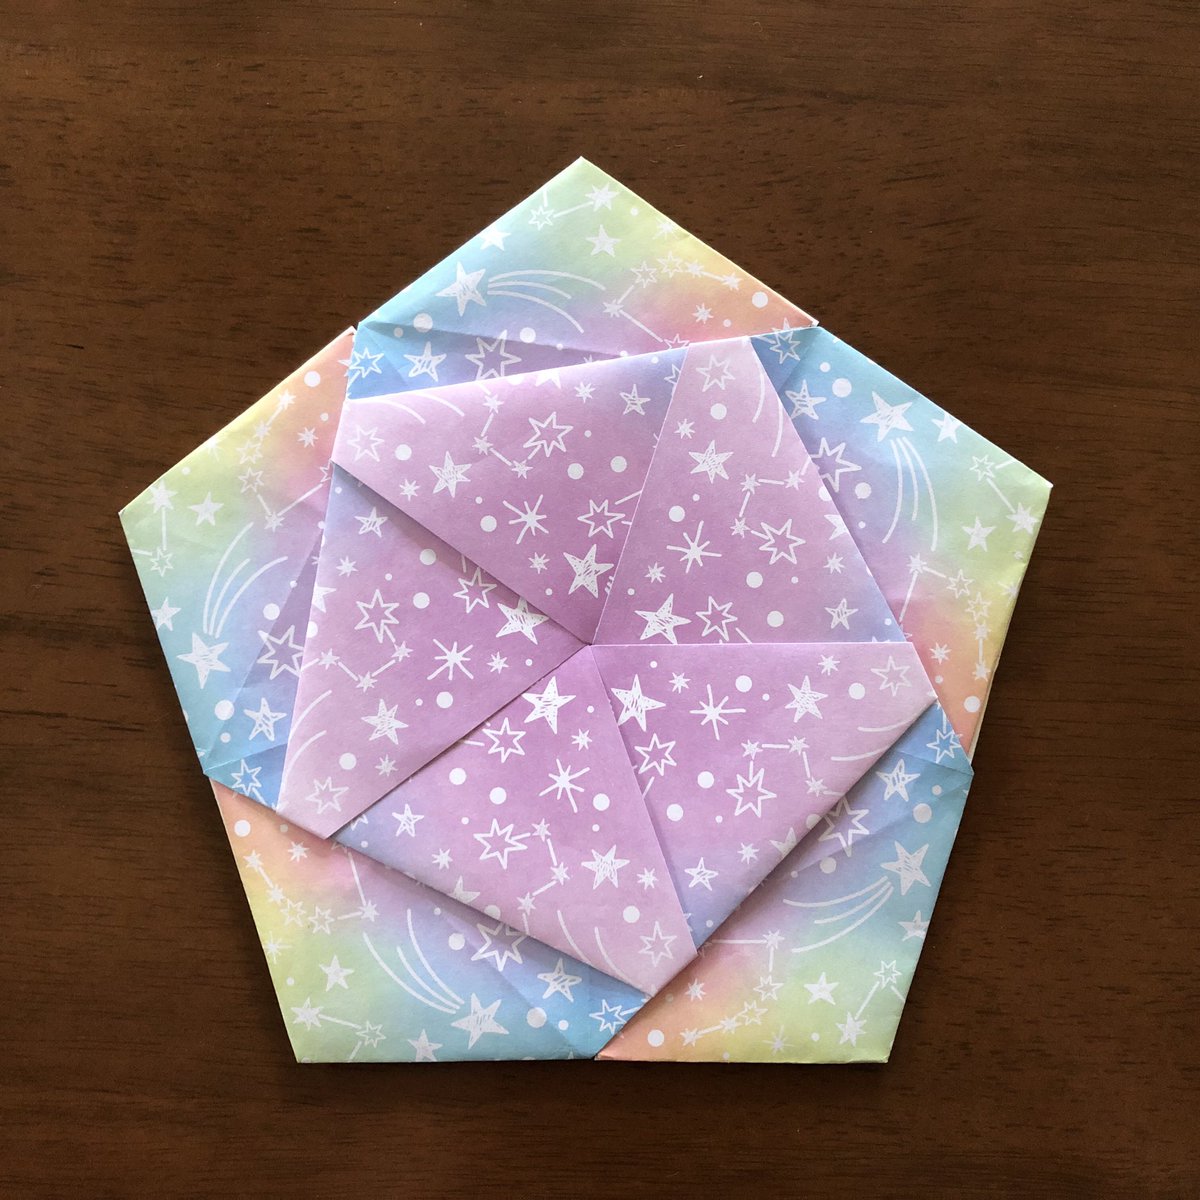 辻本京子 Kokko 粘土とペーパークラフト Kokko Garden 八角形 六角形 のコースターを作ったので さらにアレンジして折り紙5枚で五角形のコースターを作ってみました グラデーションの折り紙を使ったので 裏側もまた違った見え方で綺麗です 折り紙